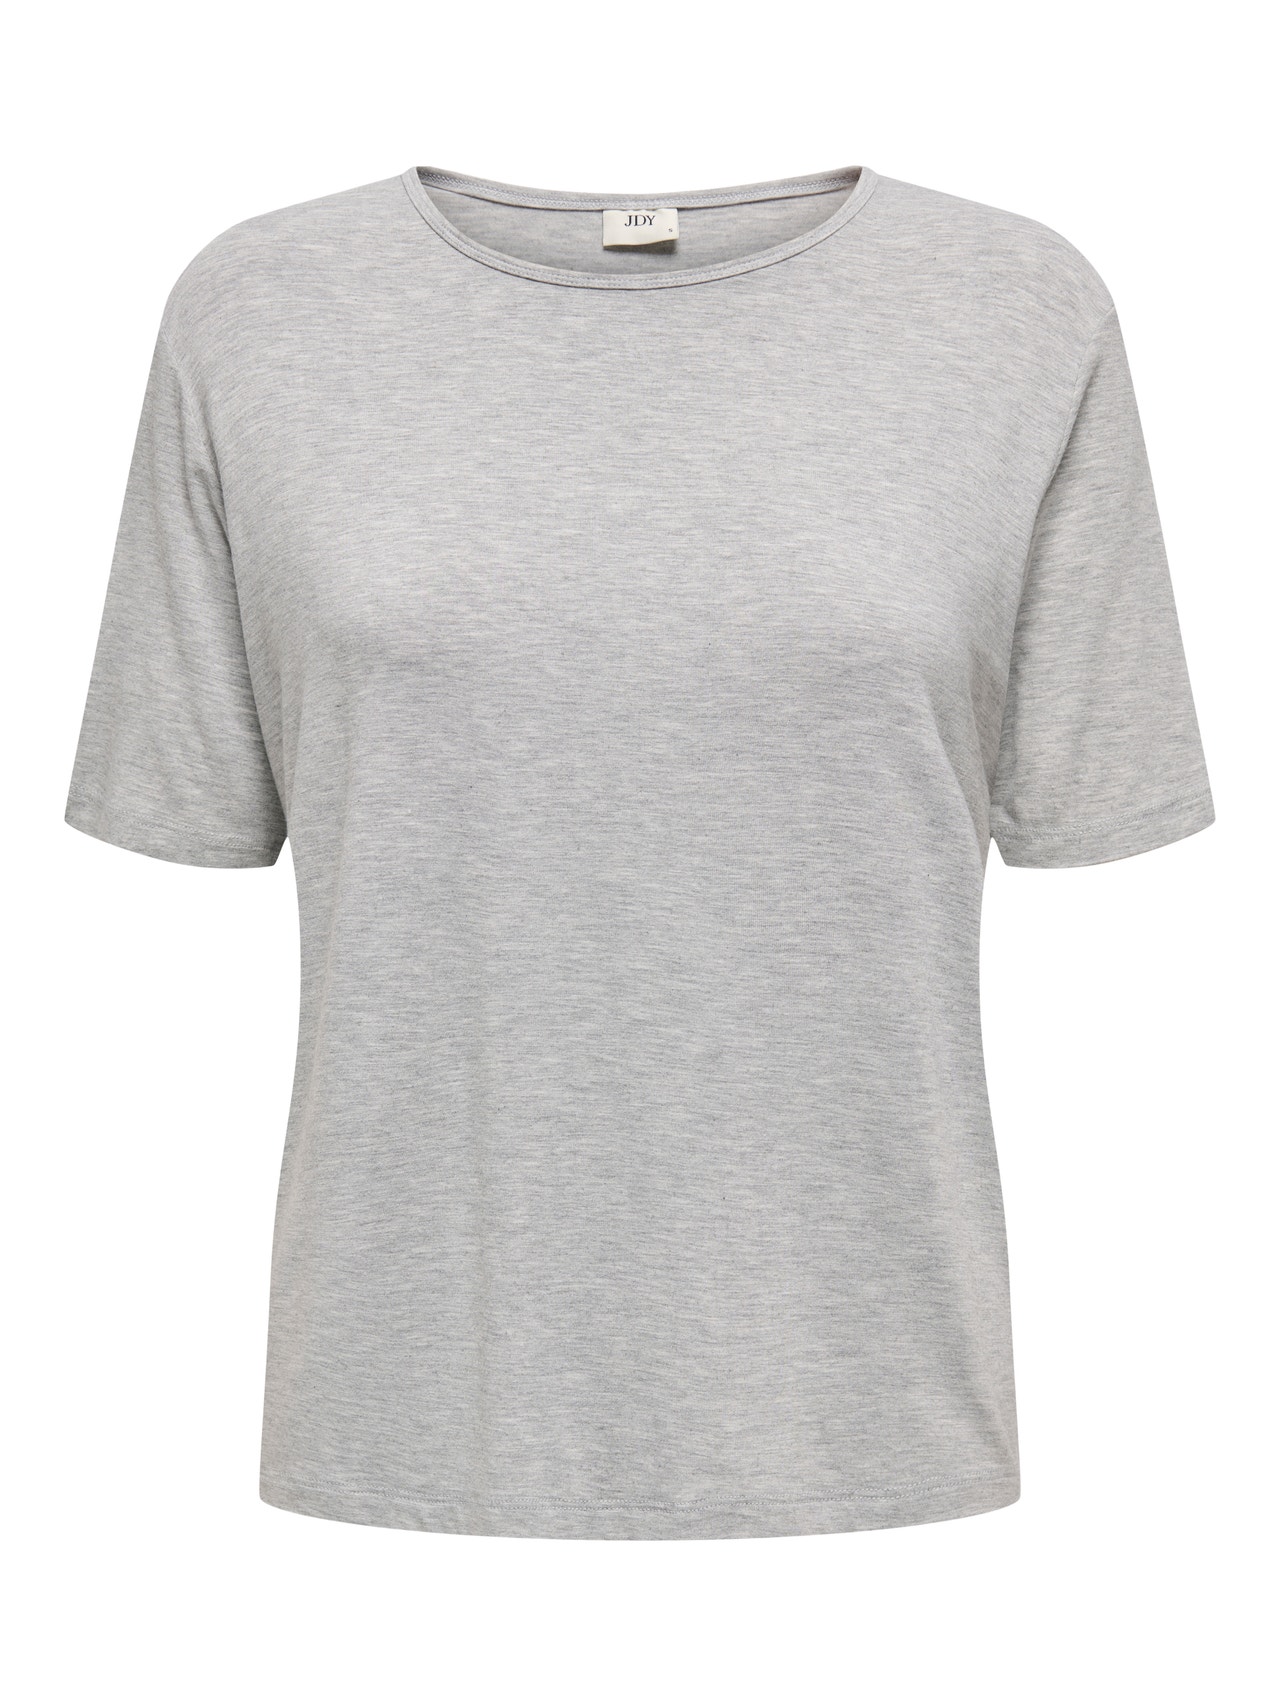 ONLY Regular Fit Round Neck Top -Light Grey Melange - 15330819